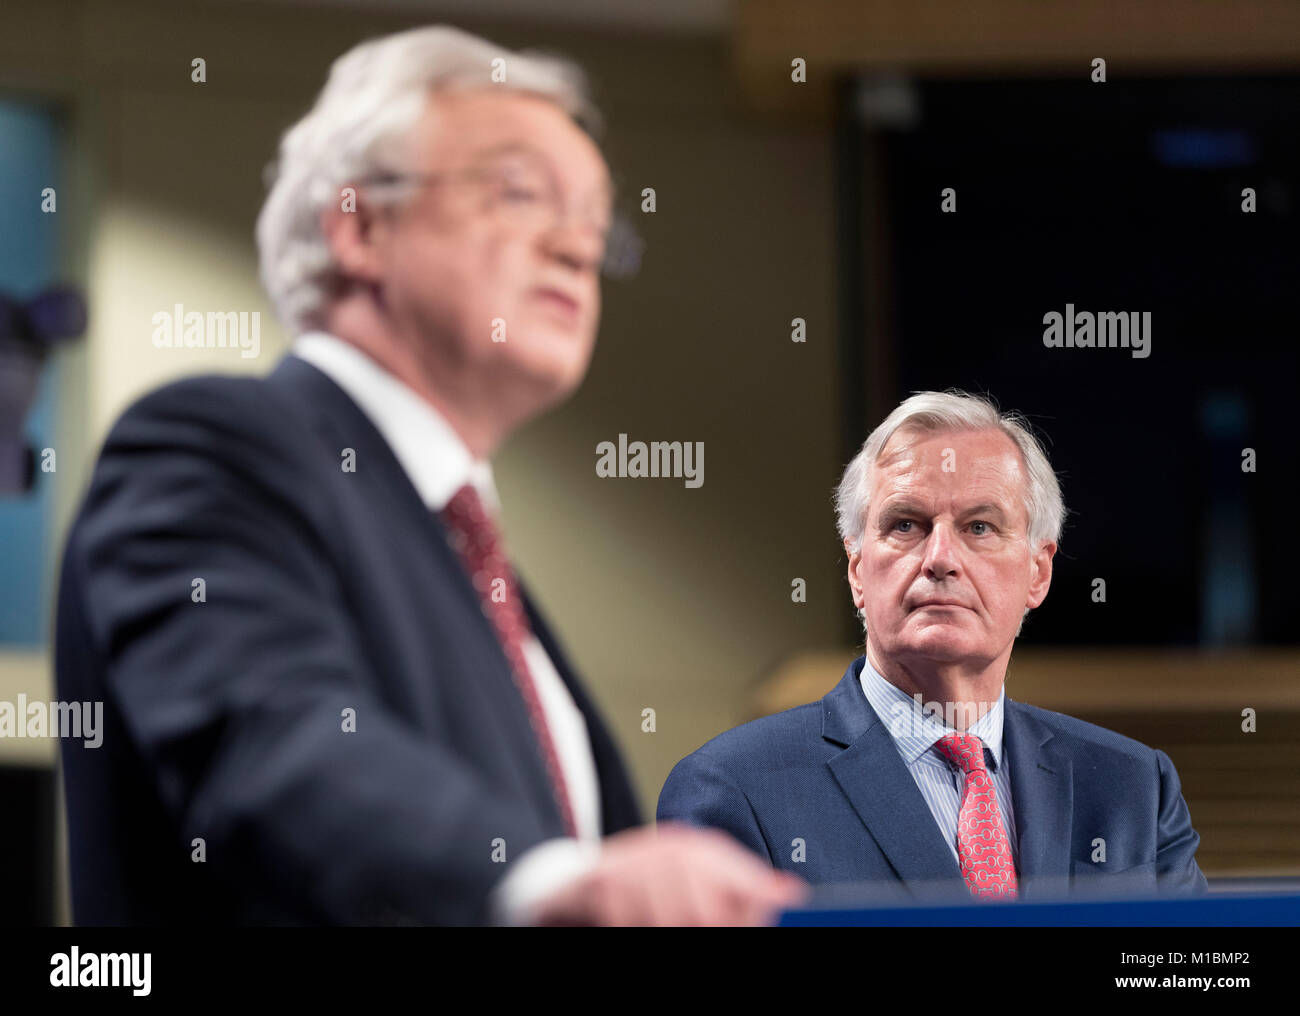 Belgique, Bruxelles, le 2017/11/10 : David Davis, Secrétaire d'État à la sortie de l'Union européenne et Michel Barnier, Commissaire européen en charge o Banque D'Images